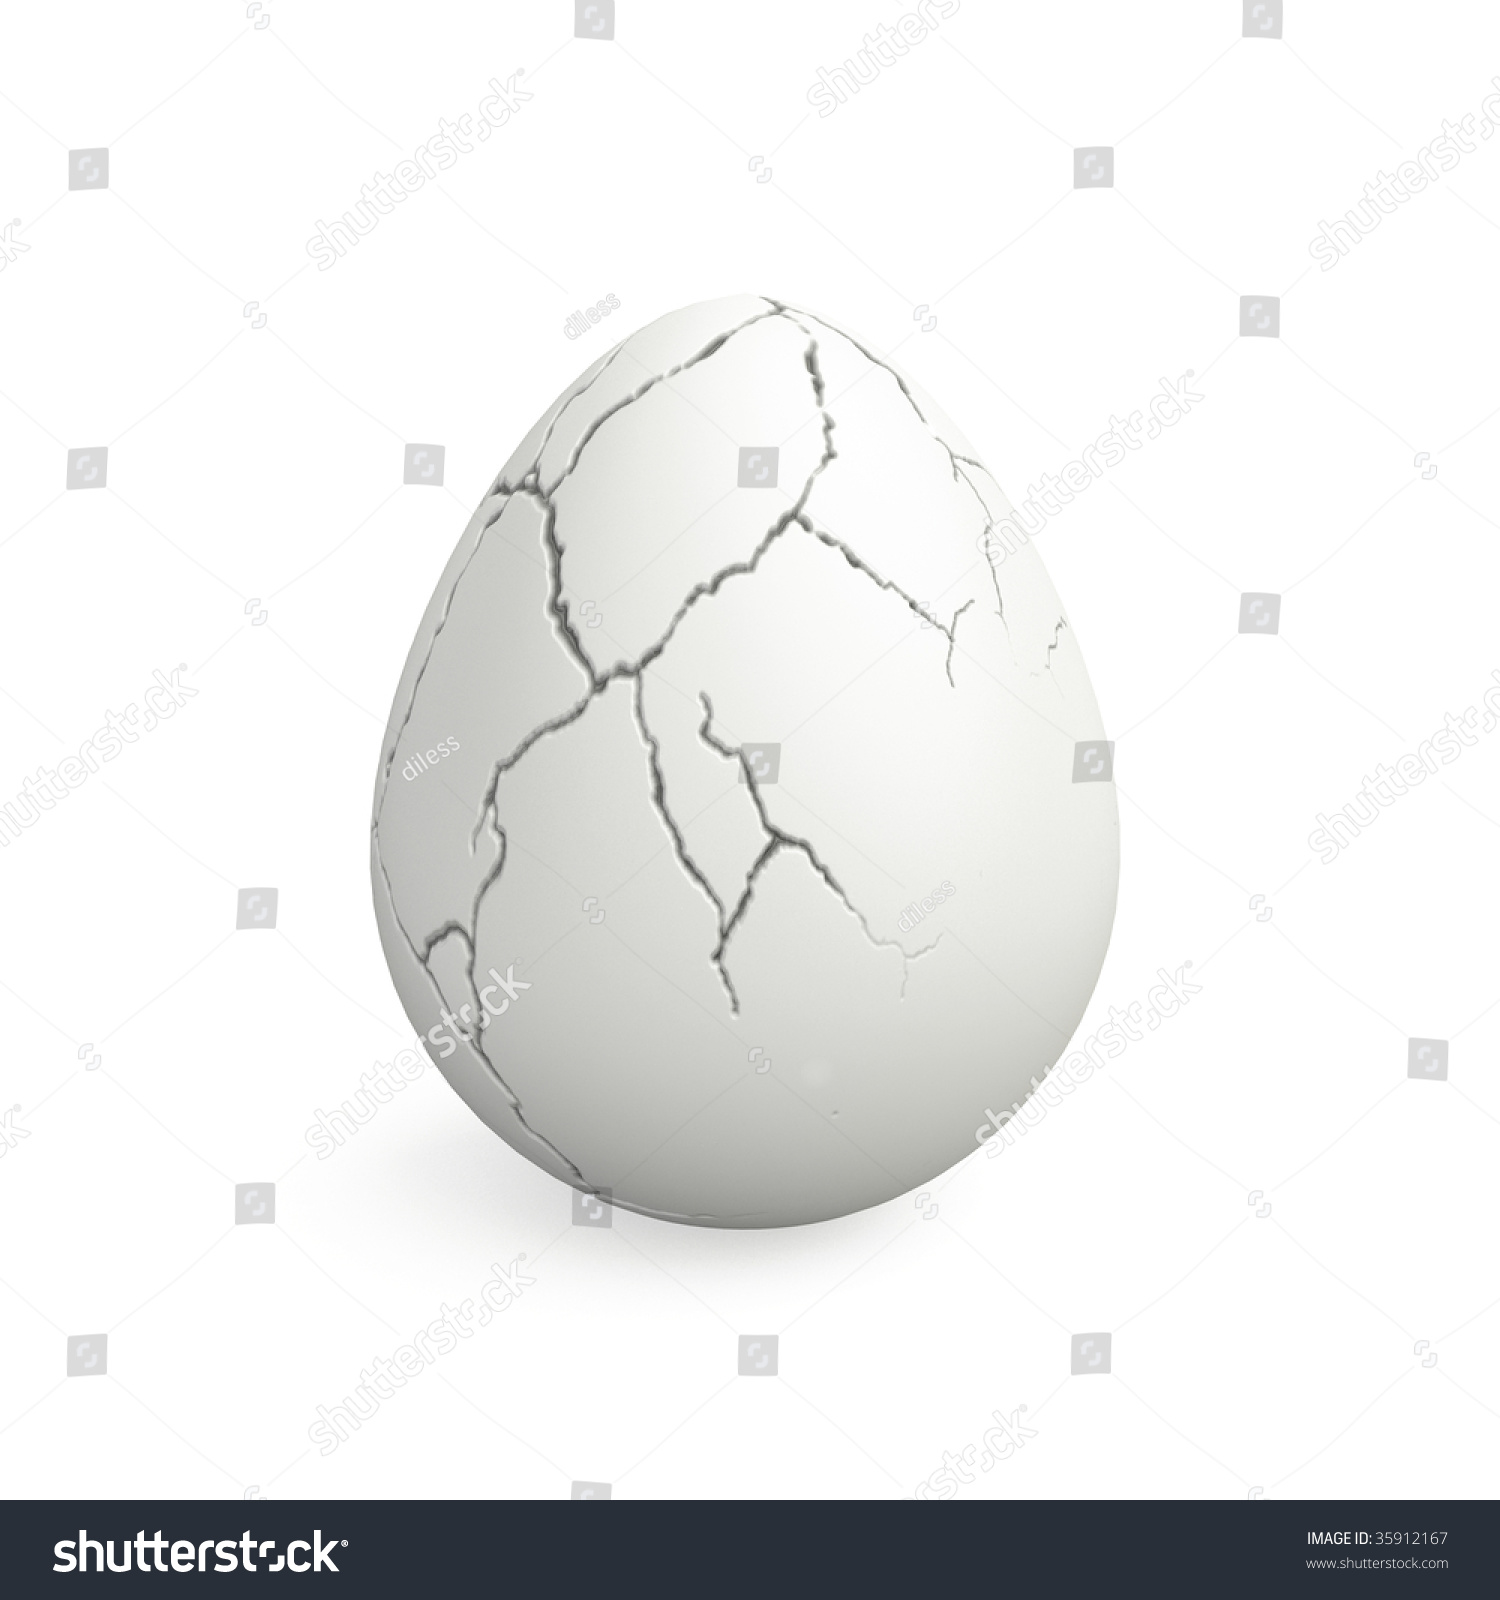 stock-photo-cracked-egg-35912167.jpg